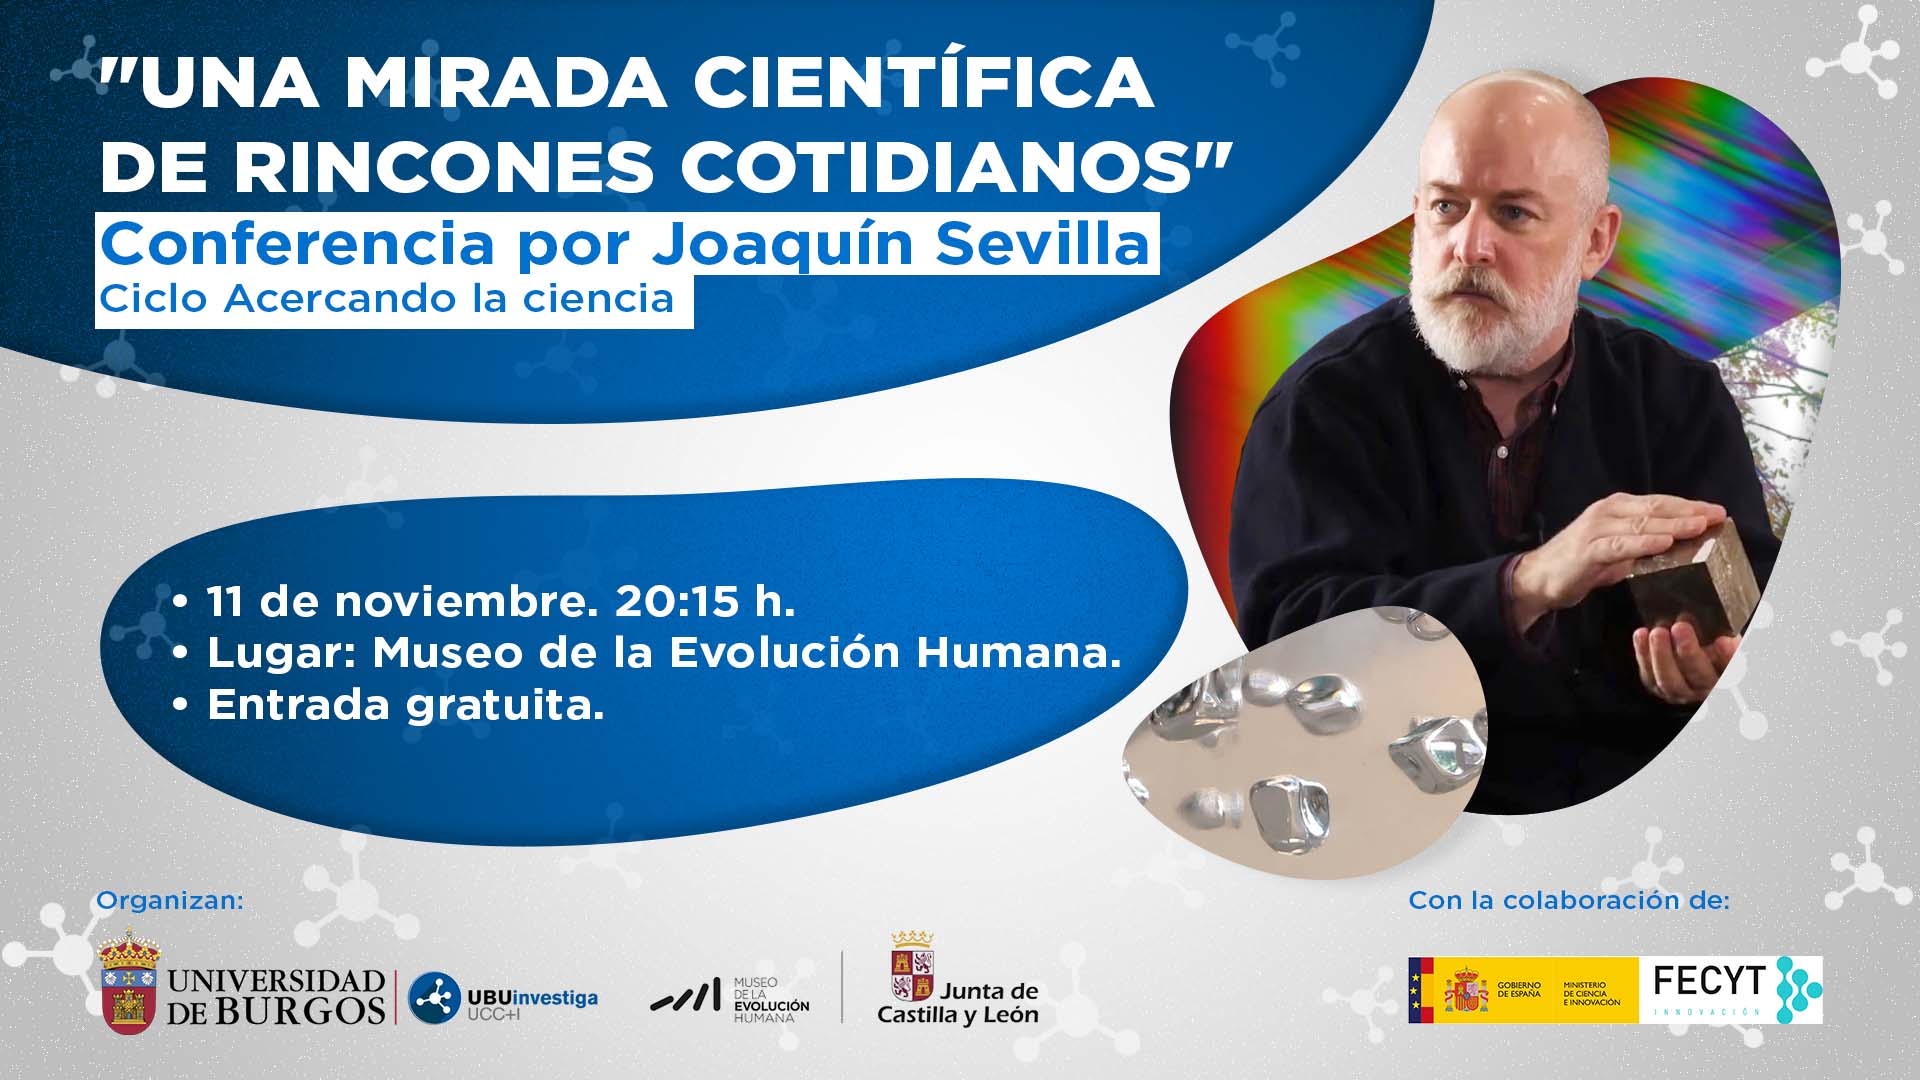 Cartel informativo de la conferencia de Joaquín Sevilla